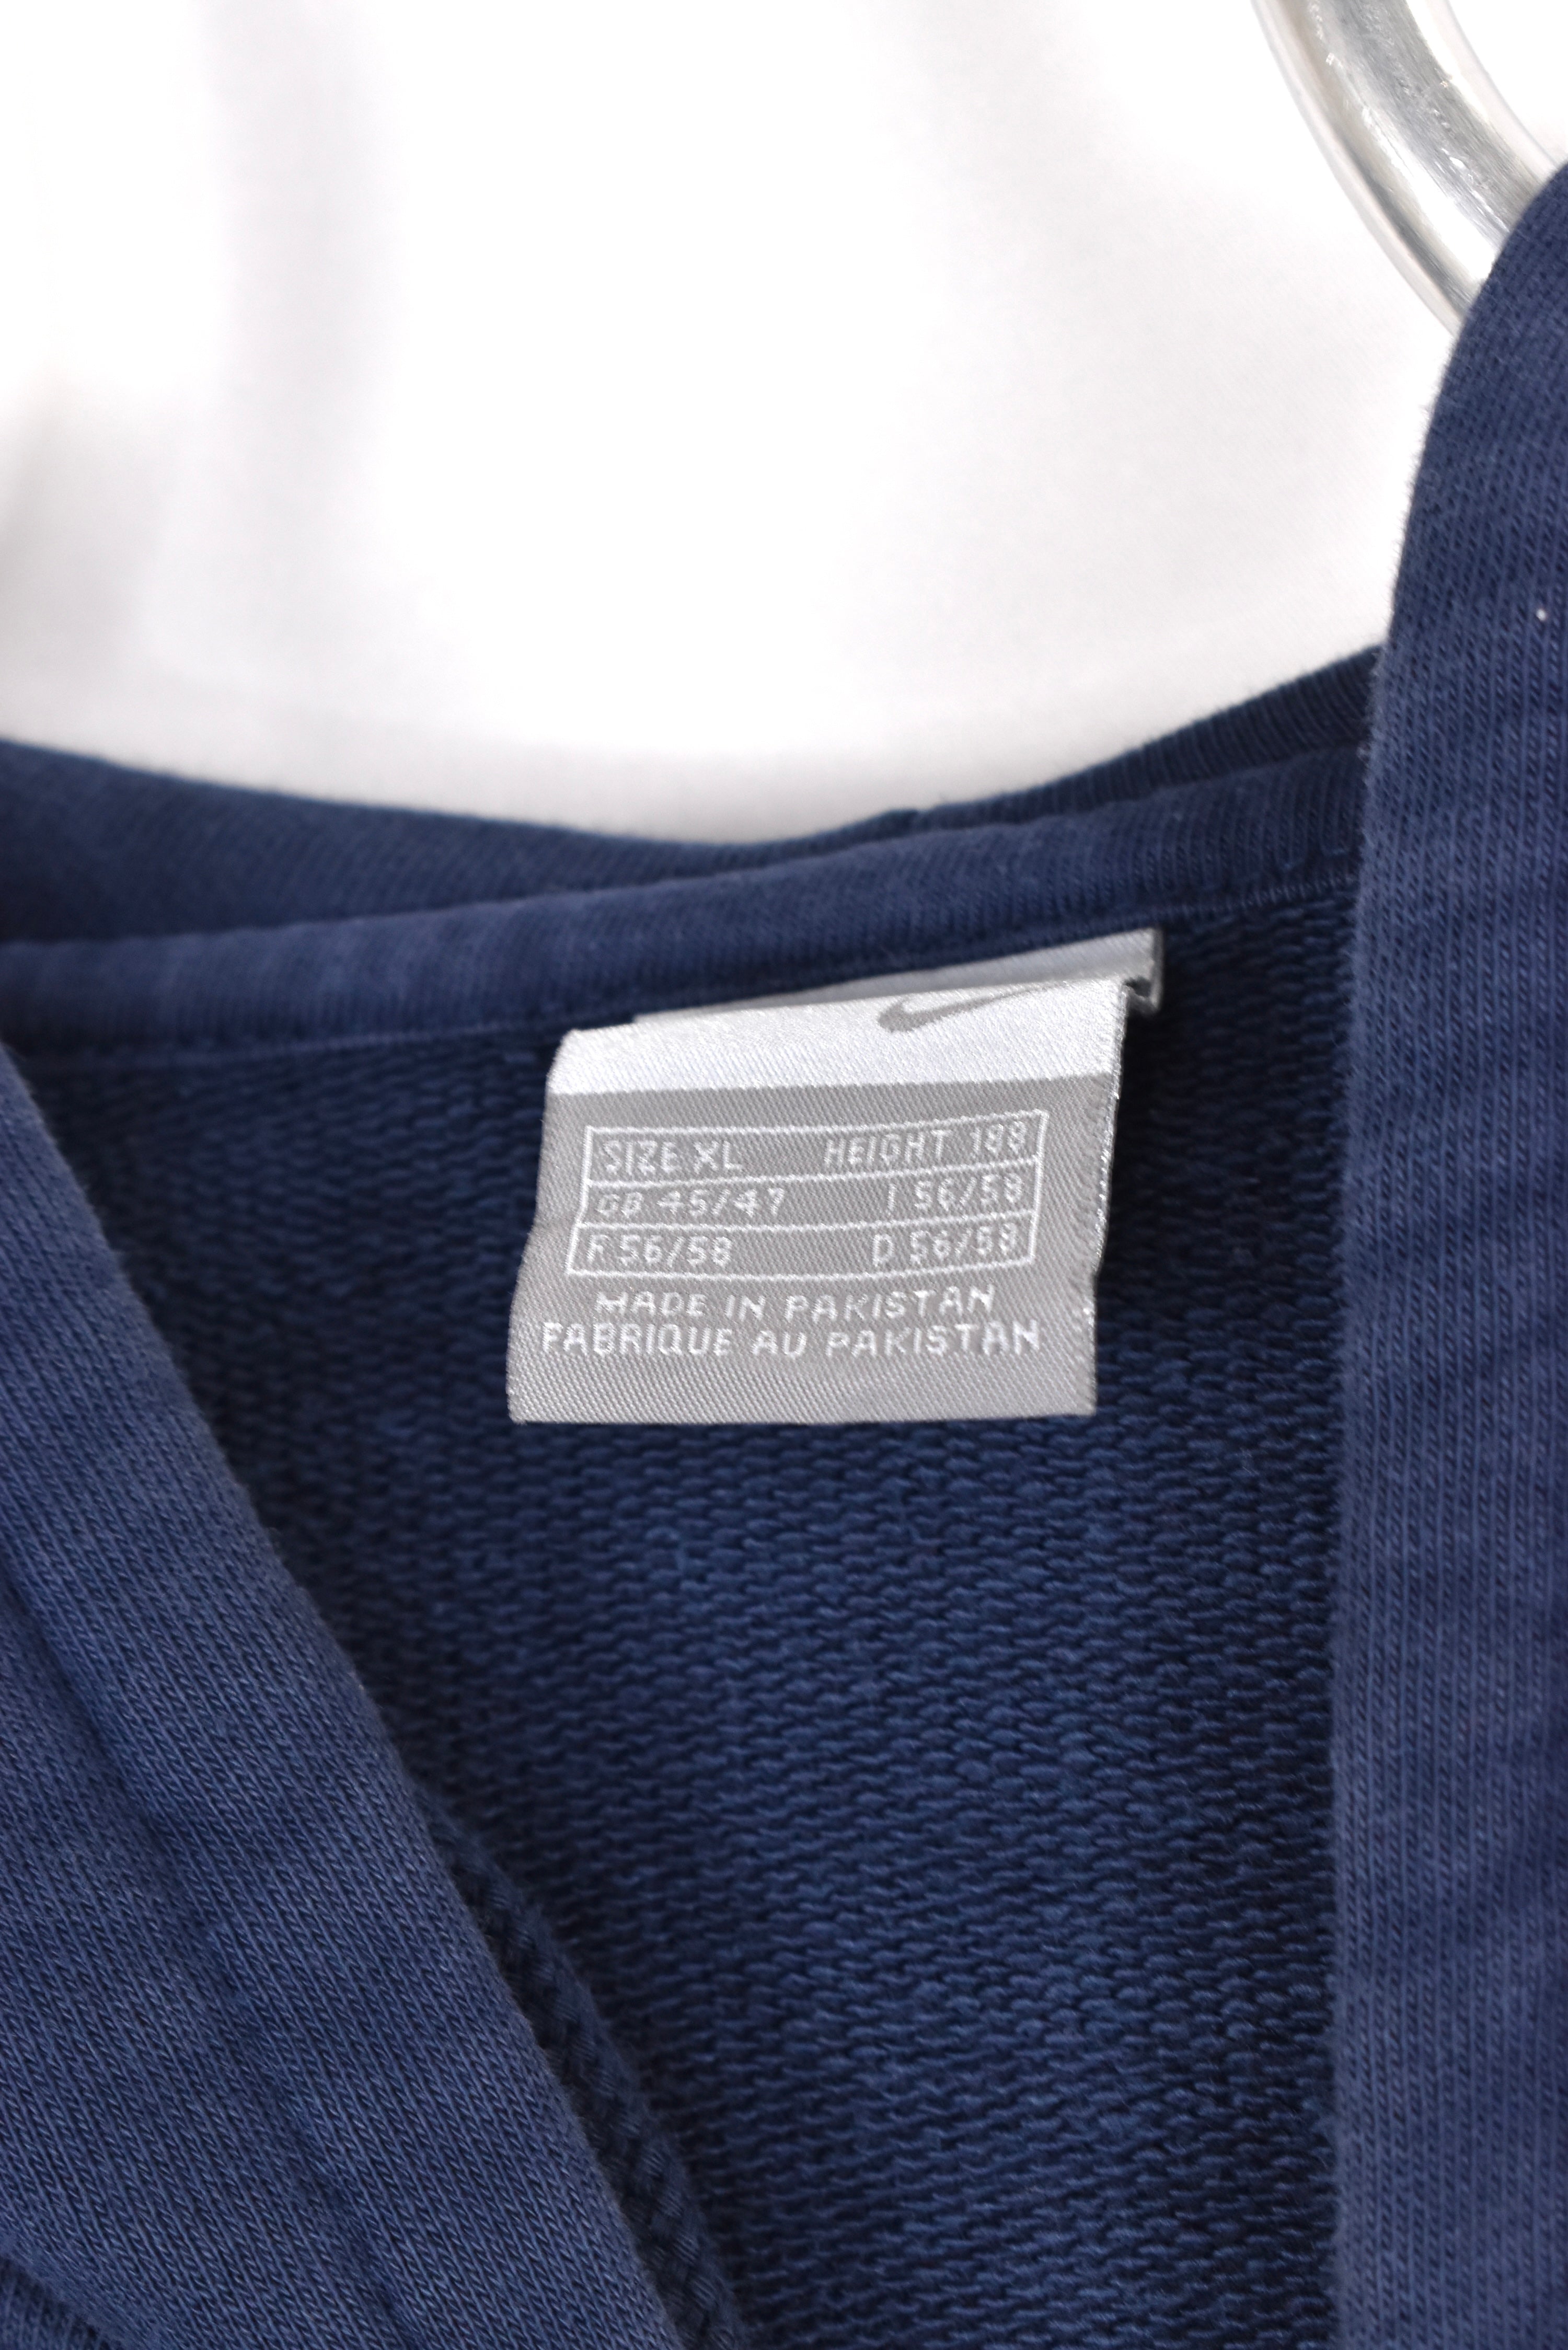 Vintage Nike hoodie, navy blue embroidered sweatshirt - AU XL NIKE